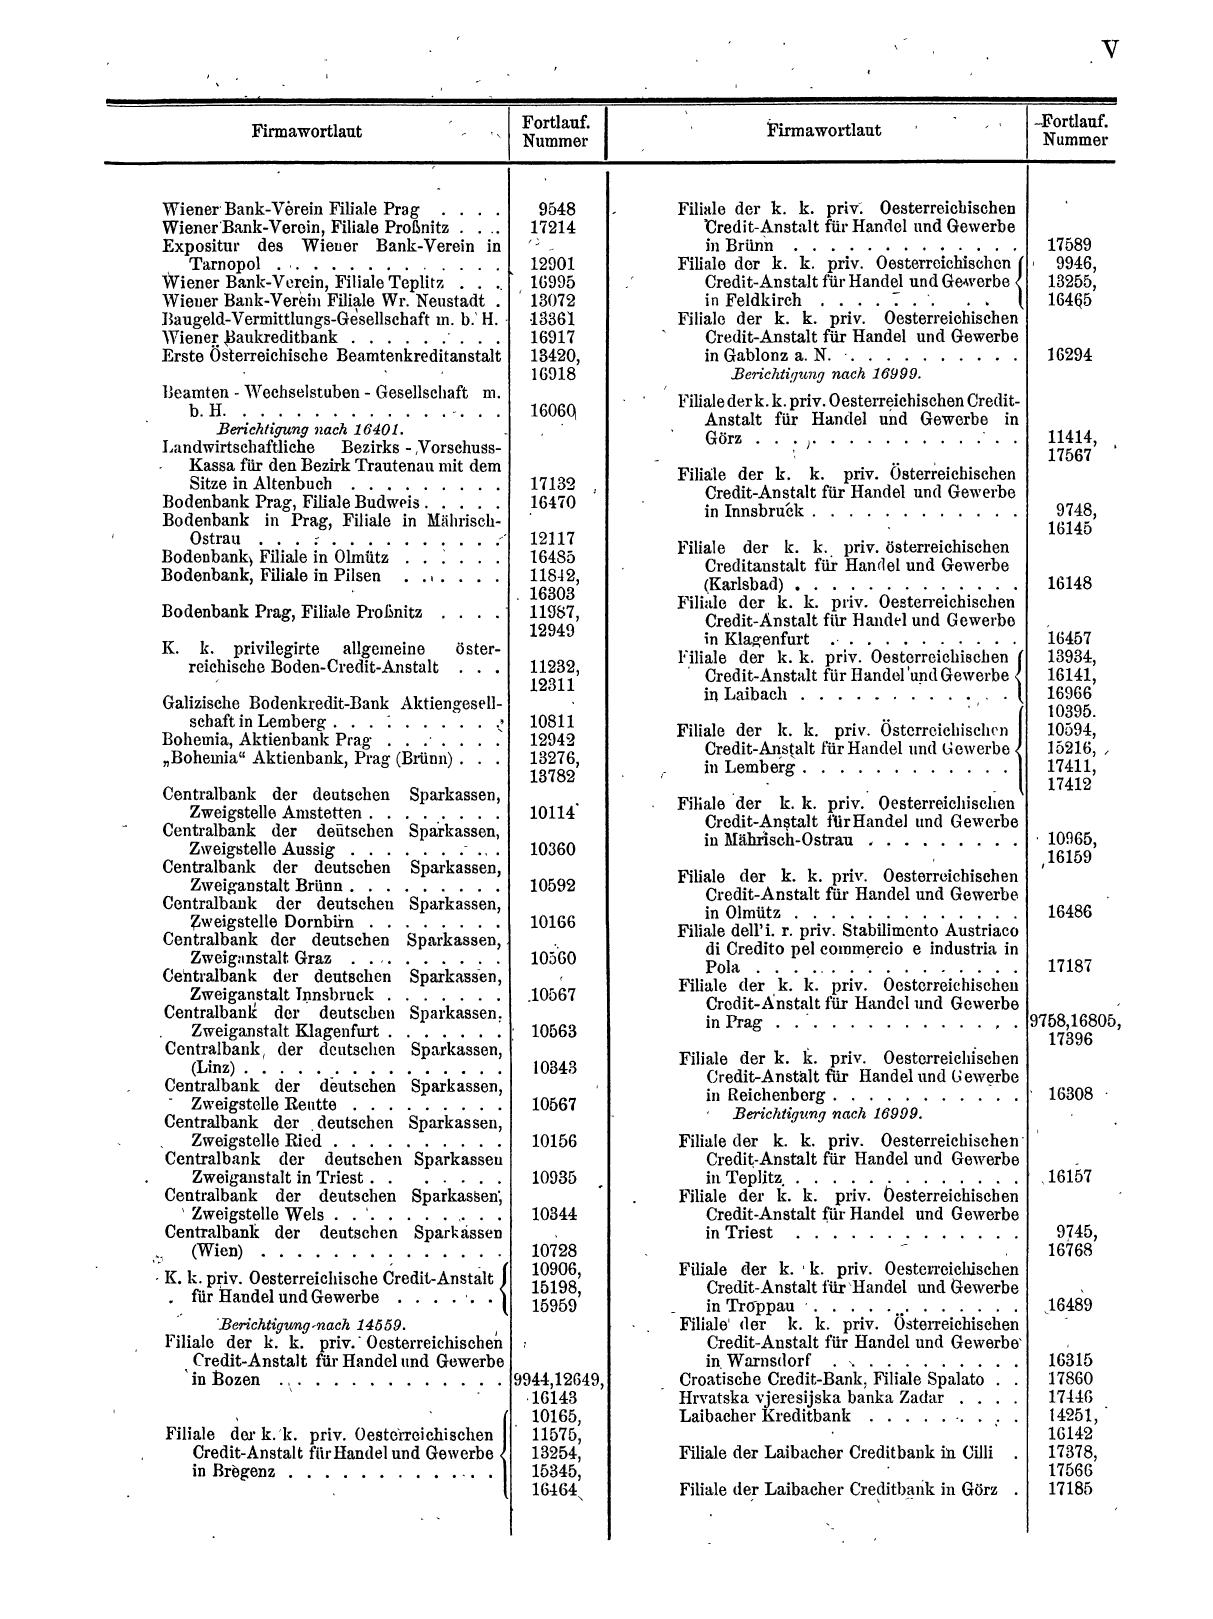 Zentralblatt für die Eintragungen in das Handelsregister 1913, Teil 2 - Seite 9